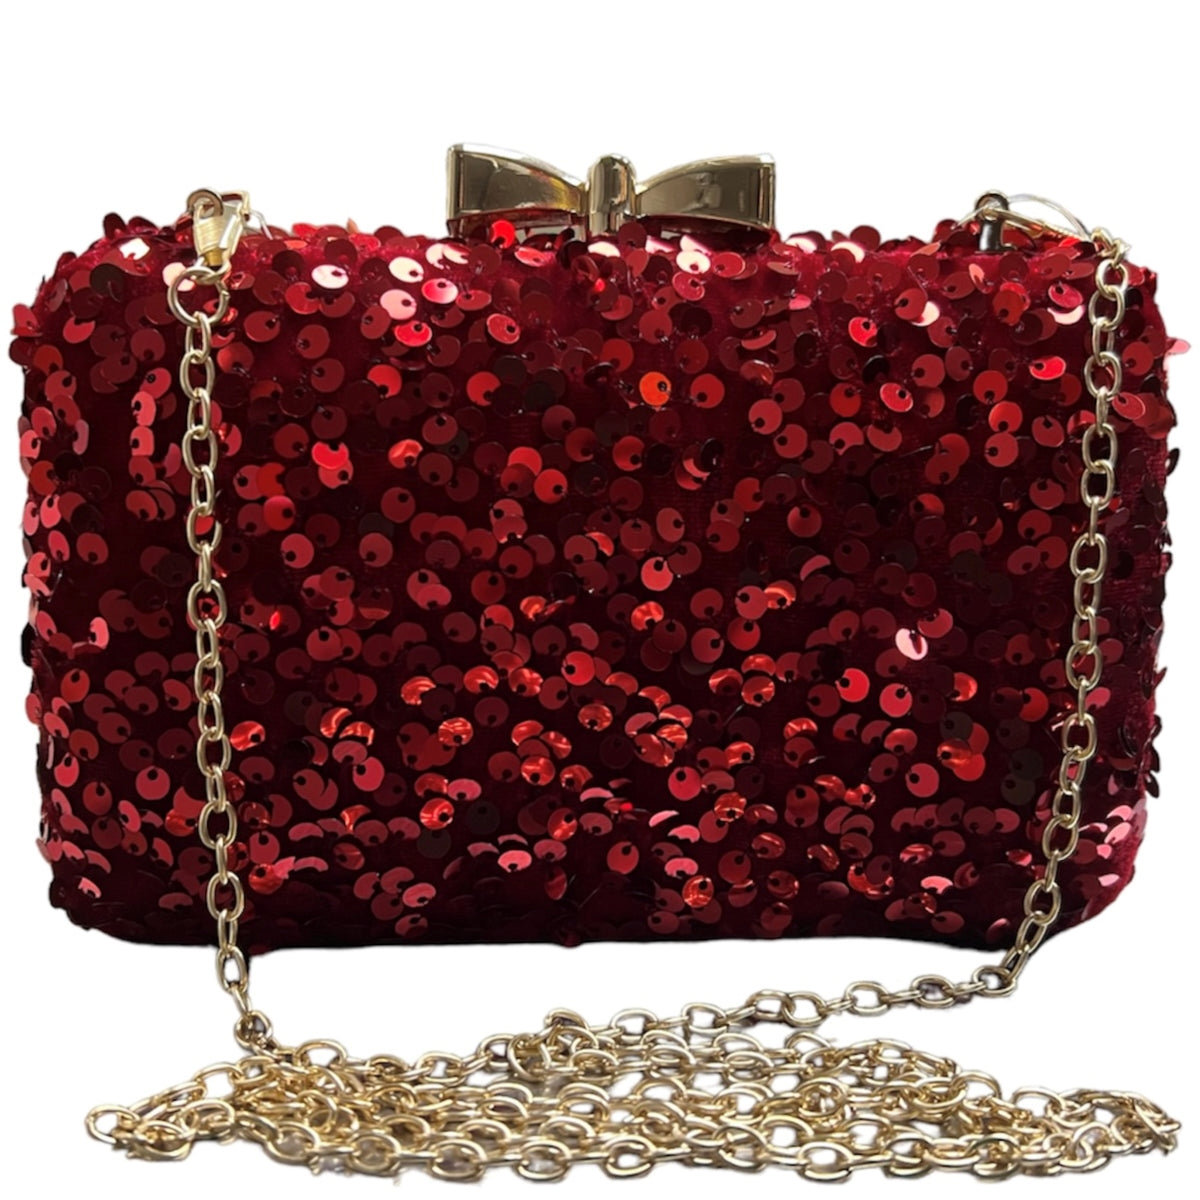 Ce sac de soirée rouge en velour parsemée de paillettes se révèlera être l'accessoire idéal pour votre tenue. Sa taille parfaite et ses paillettes brillantes sublimeront votre look. Laissez-vous parler par cet élégant petit bijou de 19x12 cm.